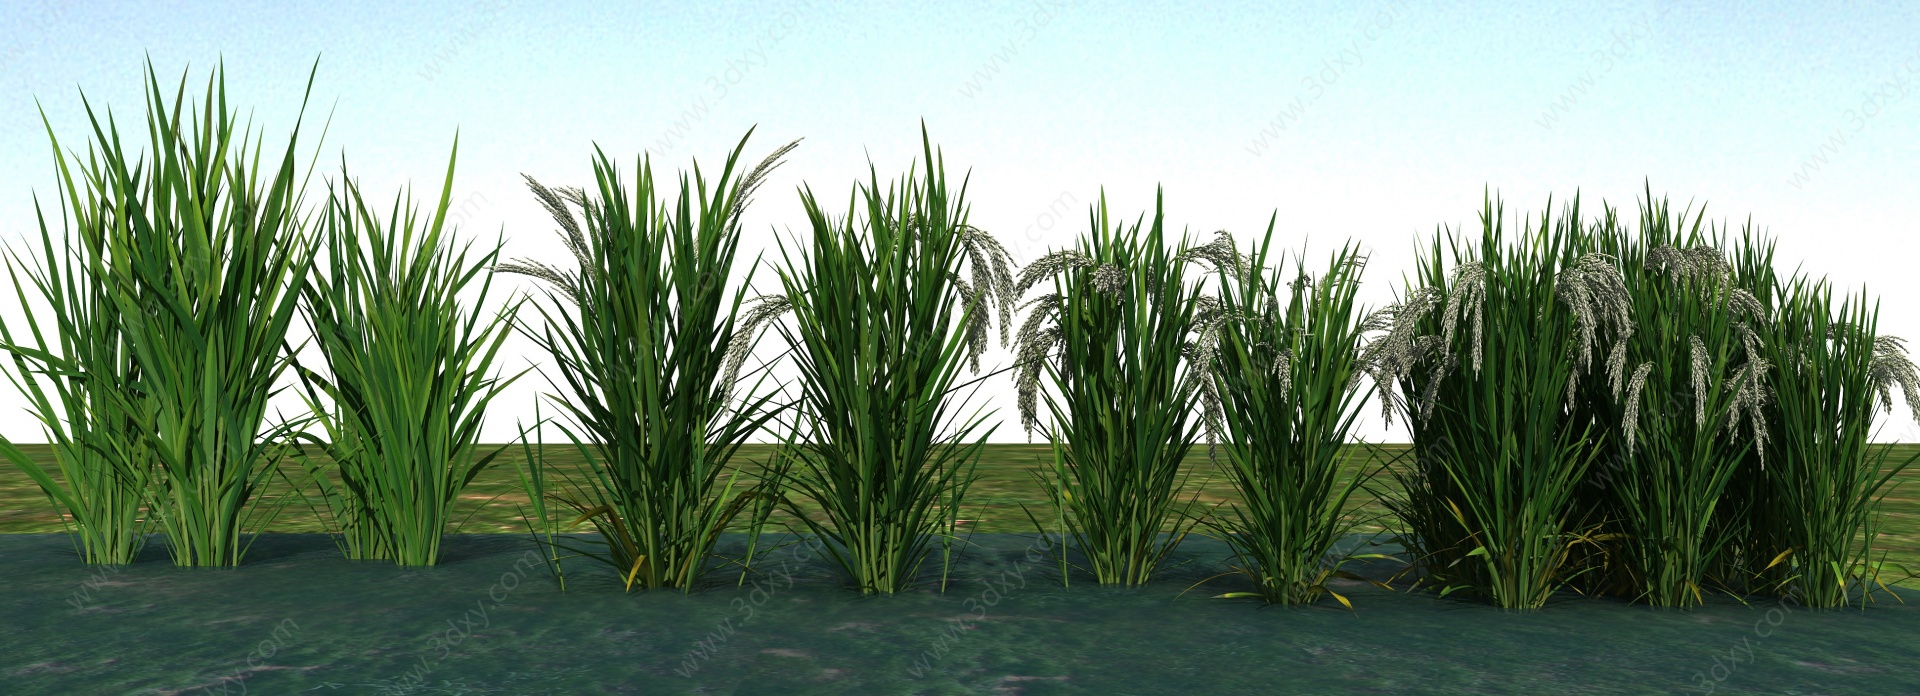 农业作物谷子水稻3D模型